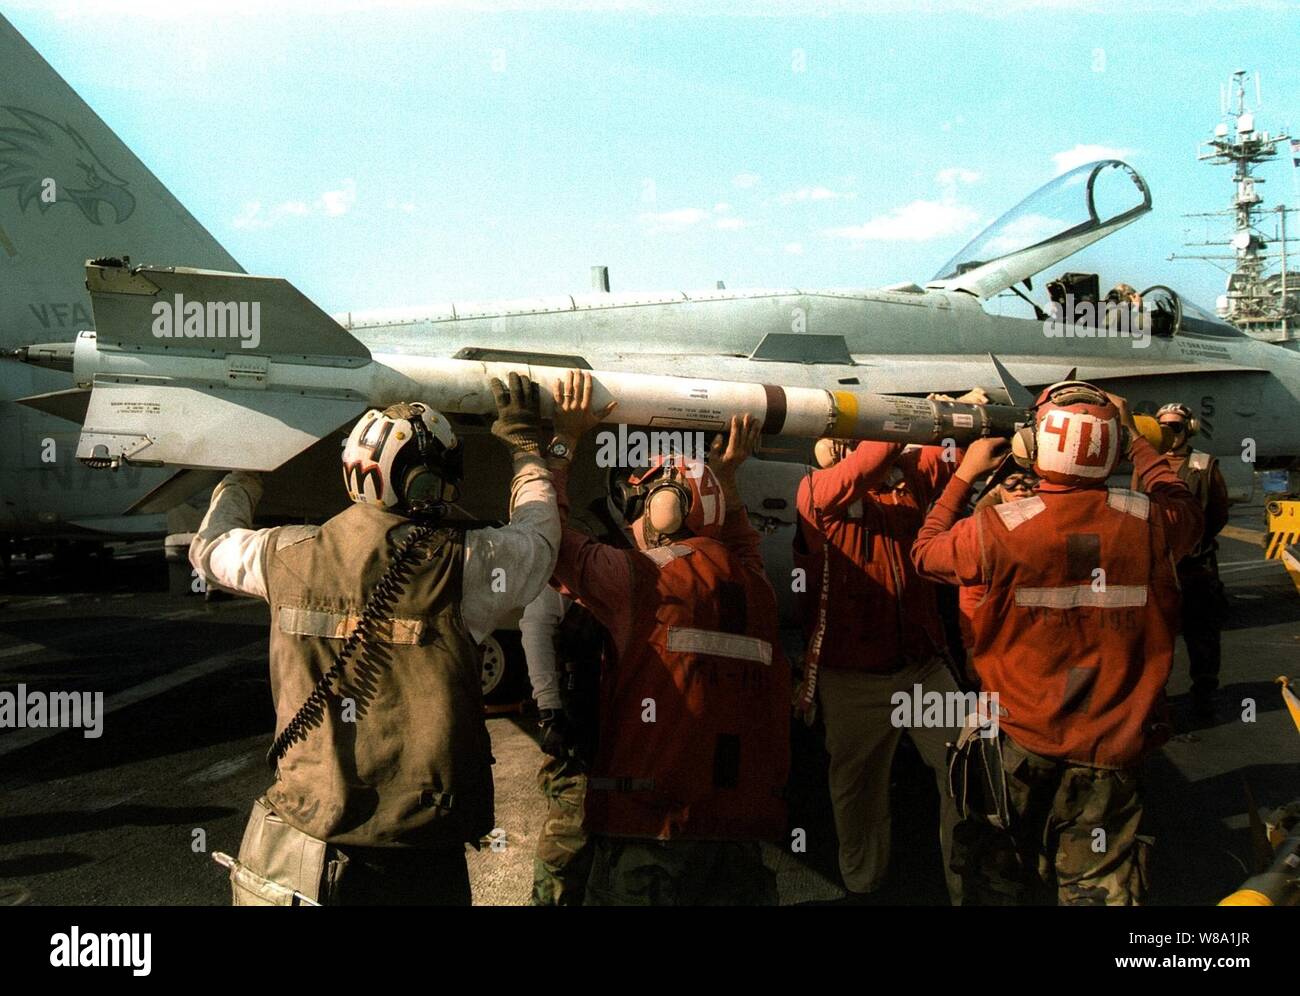 Aviation ordnancemen caricare un AIM Sidewinder short range missile su una F/A-18 Hornet sul ponte di volo della USS Indipendenza (CV 62) mentre la nave opera nel Golfo Persico nel febbraio 10, 1998. Indipendenza e la sua avviato Carrier aria Wing 5 sono in stazione nel Golfo Persico a sostegno del funzionamento orologio meridionale che sono gli Stati Uniti e le forze della coalizione esecuzione della no-fly zone su Iraq meridionale. Foto Stock